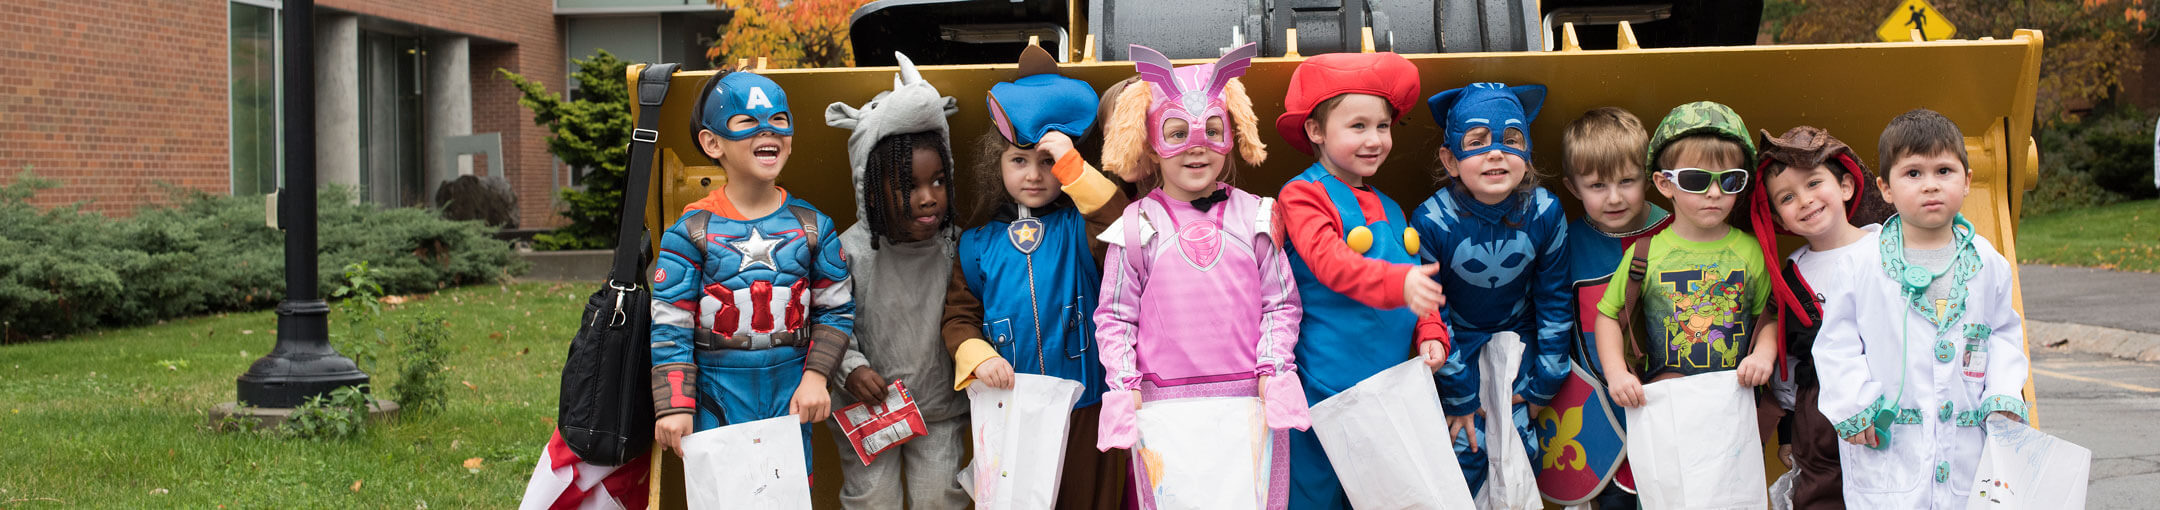 Preschoolers dressed up for Halloween. 